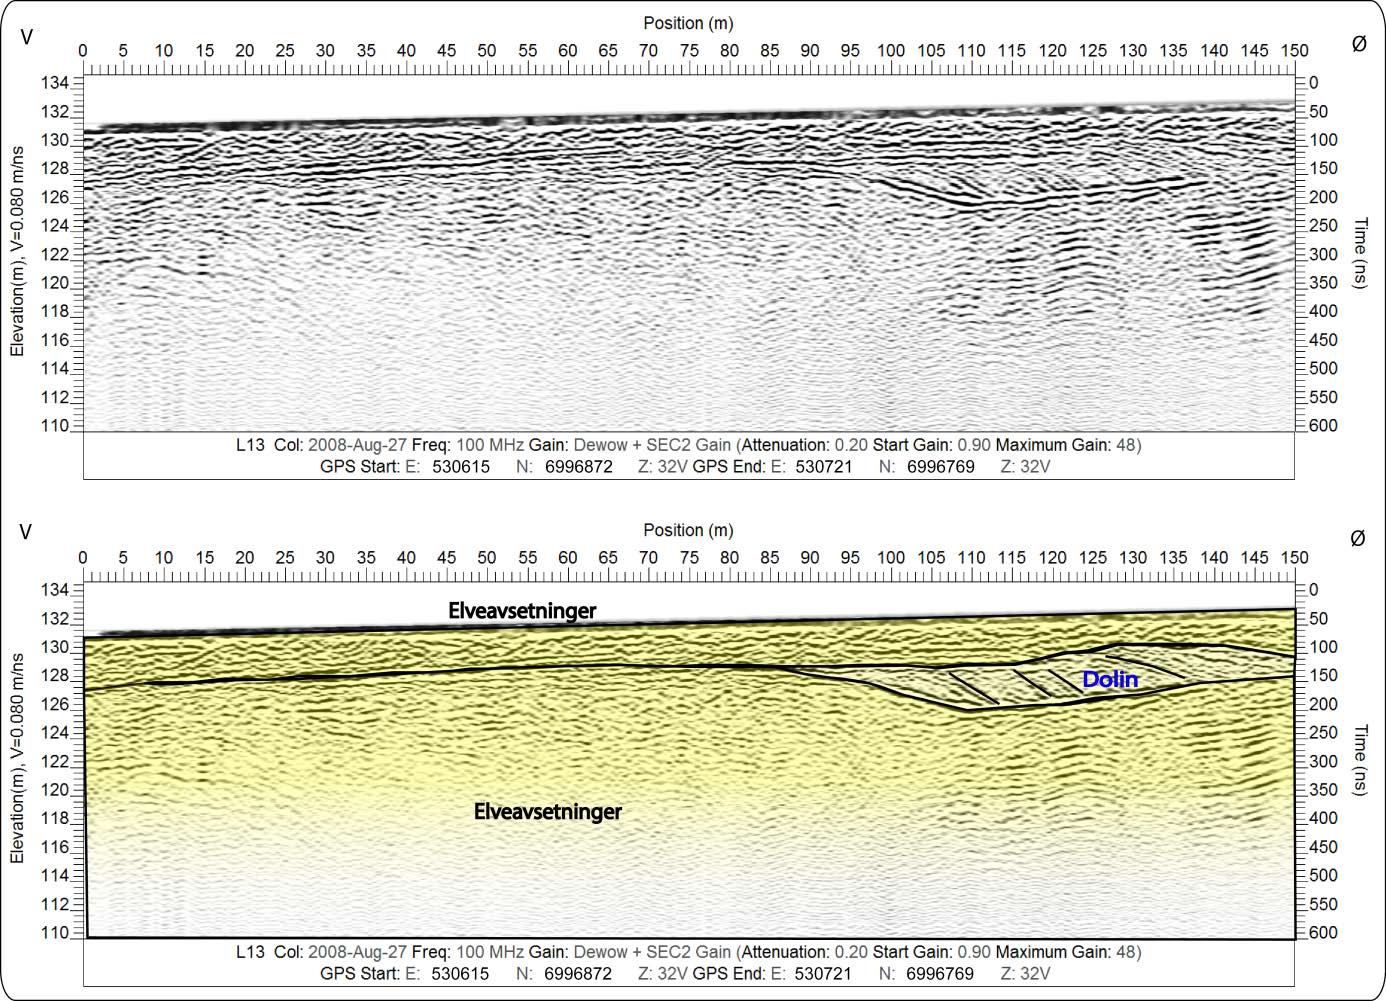 karsthullet kollapset for så å synke ned i rasgropen. Mektigheten til sedimentene anslås å være > 20 meter. L13 er målt like sør for dolinen og ser ut til å vise to forskjellige sekvenser.